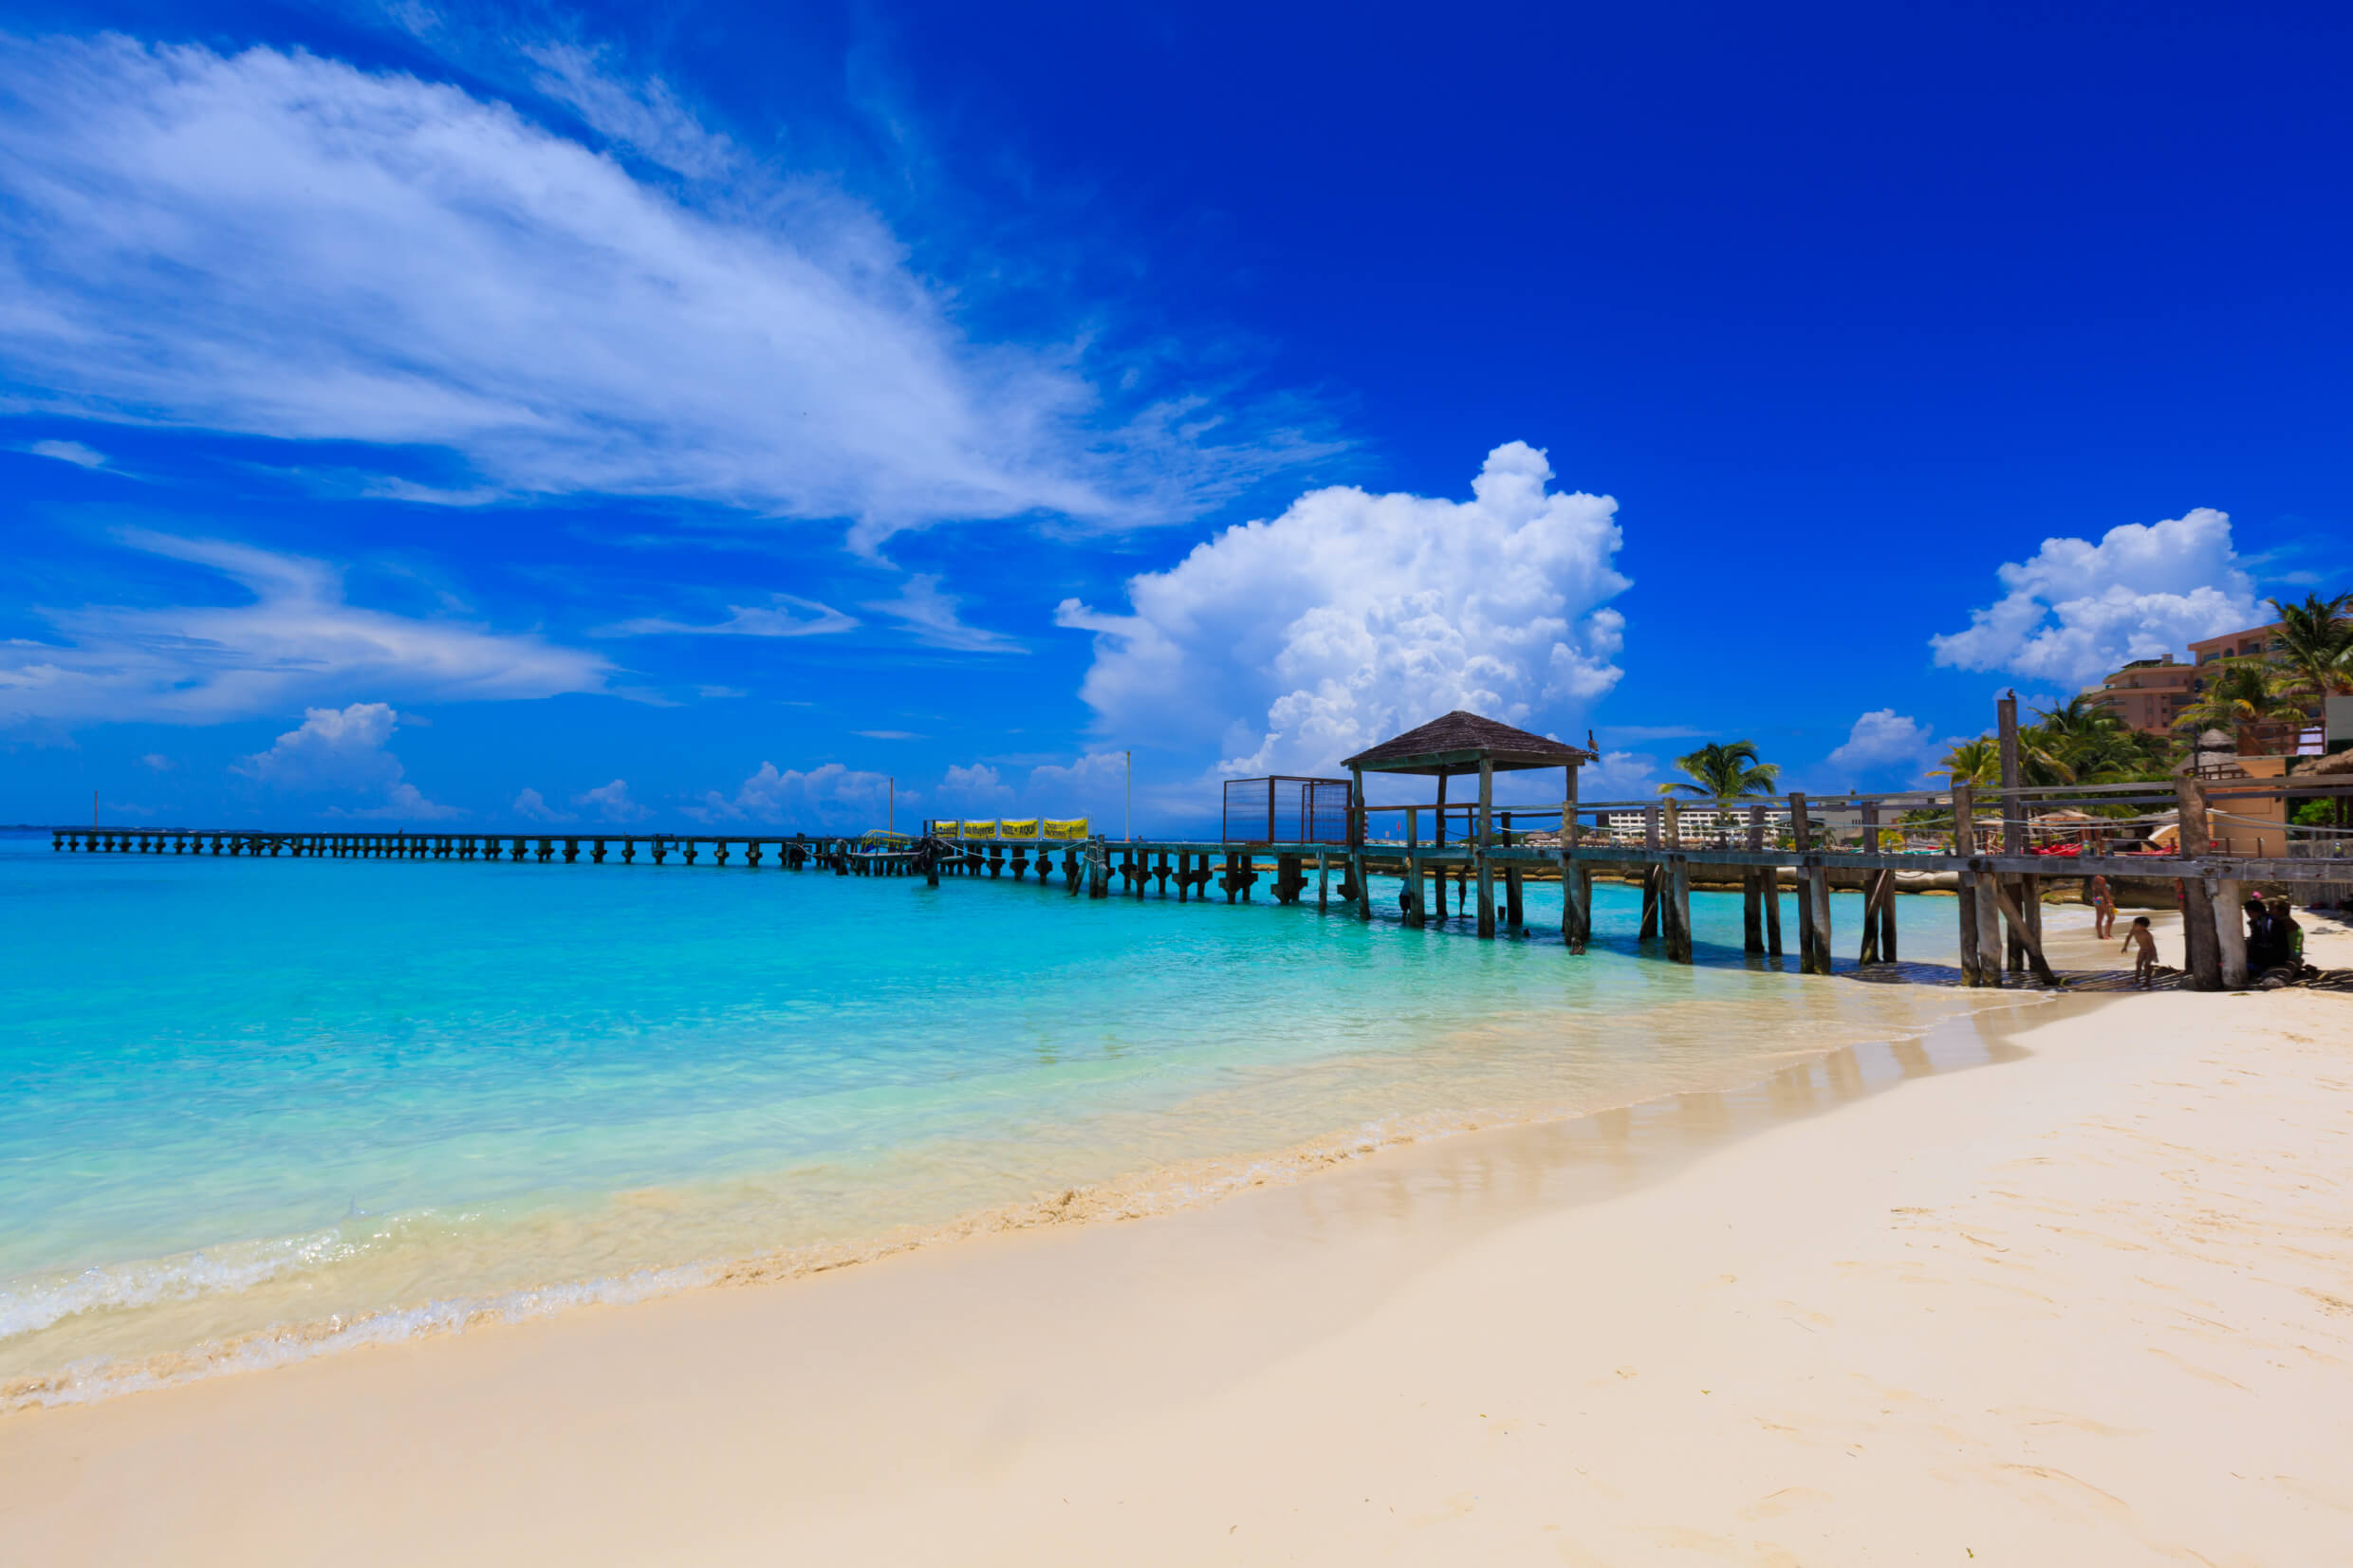 Premier Hotels in Cancun